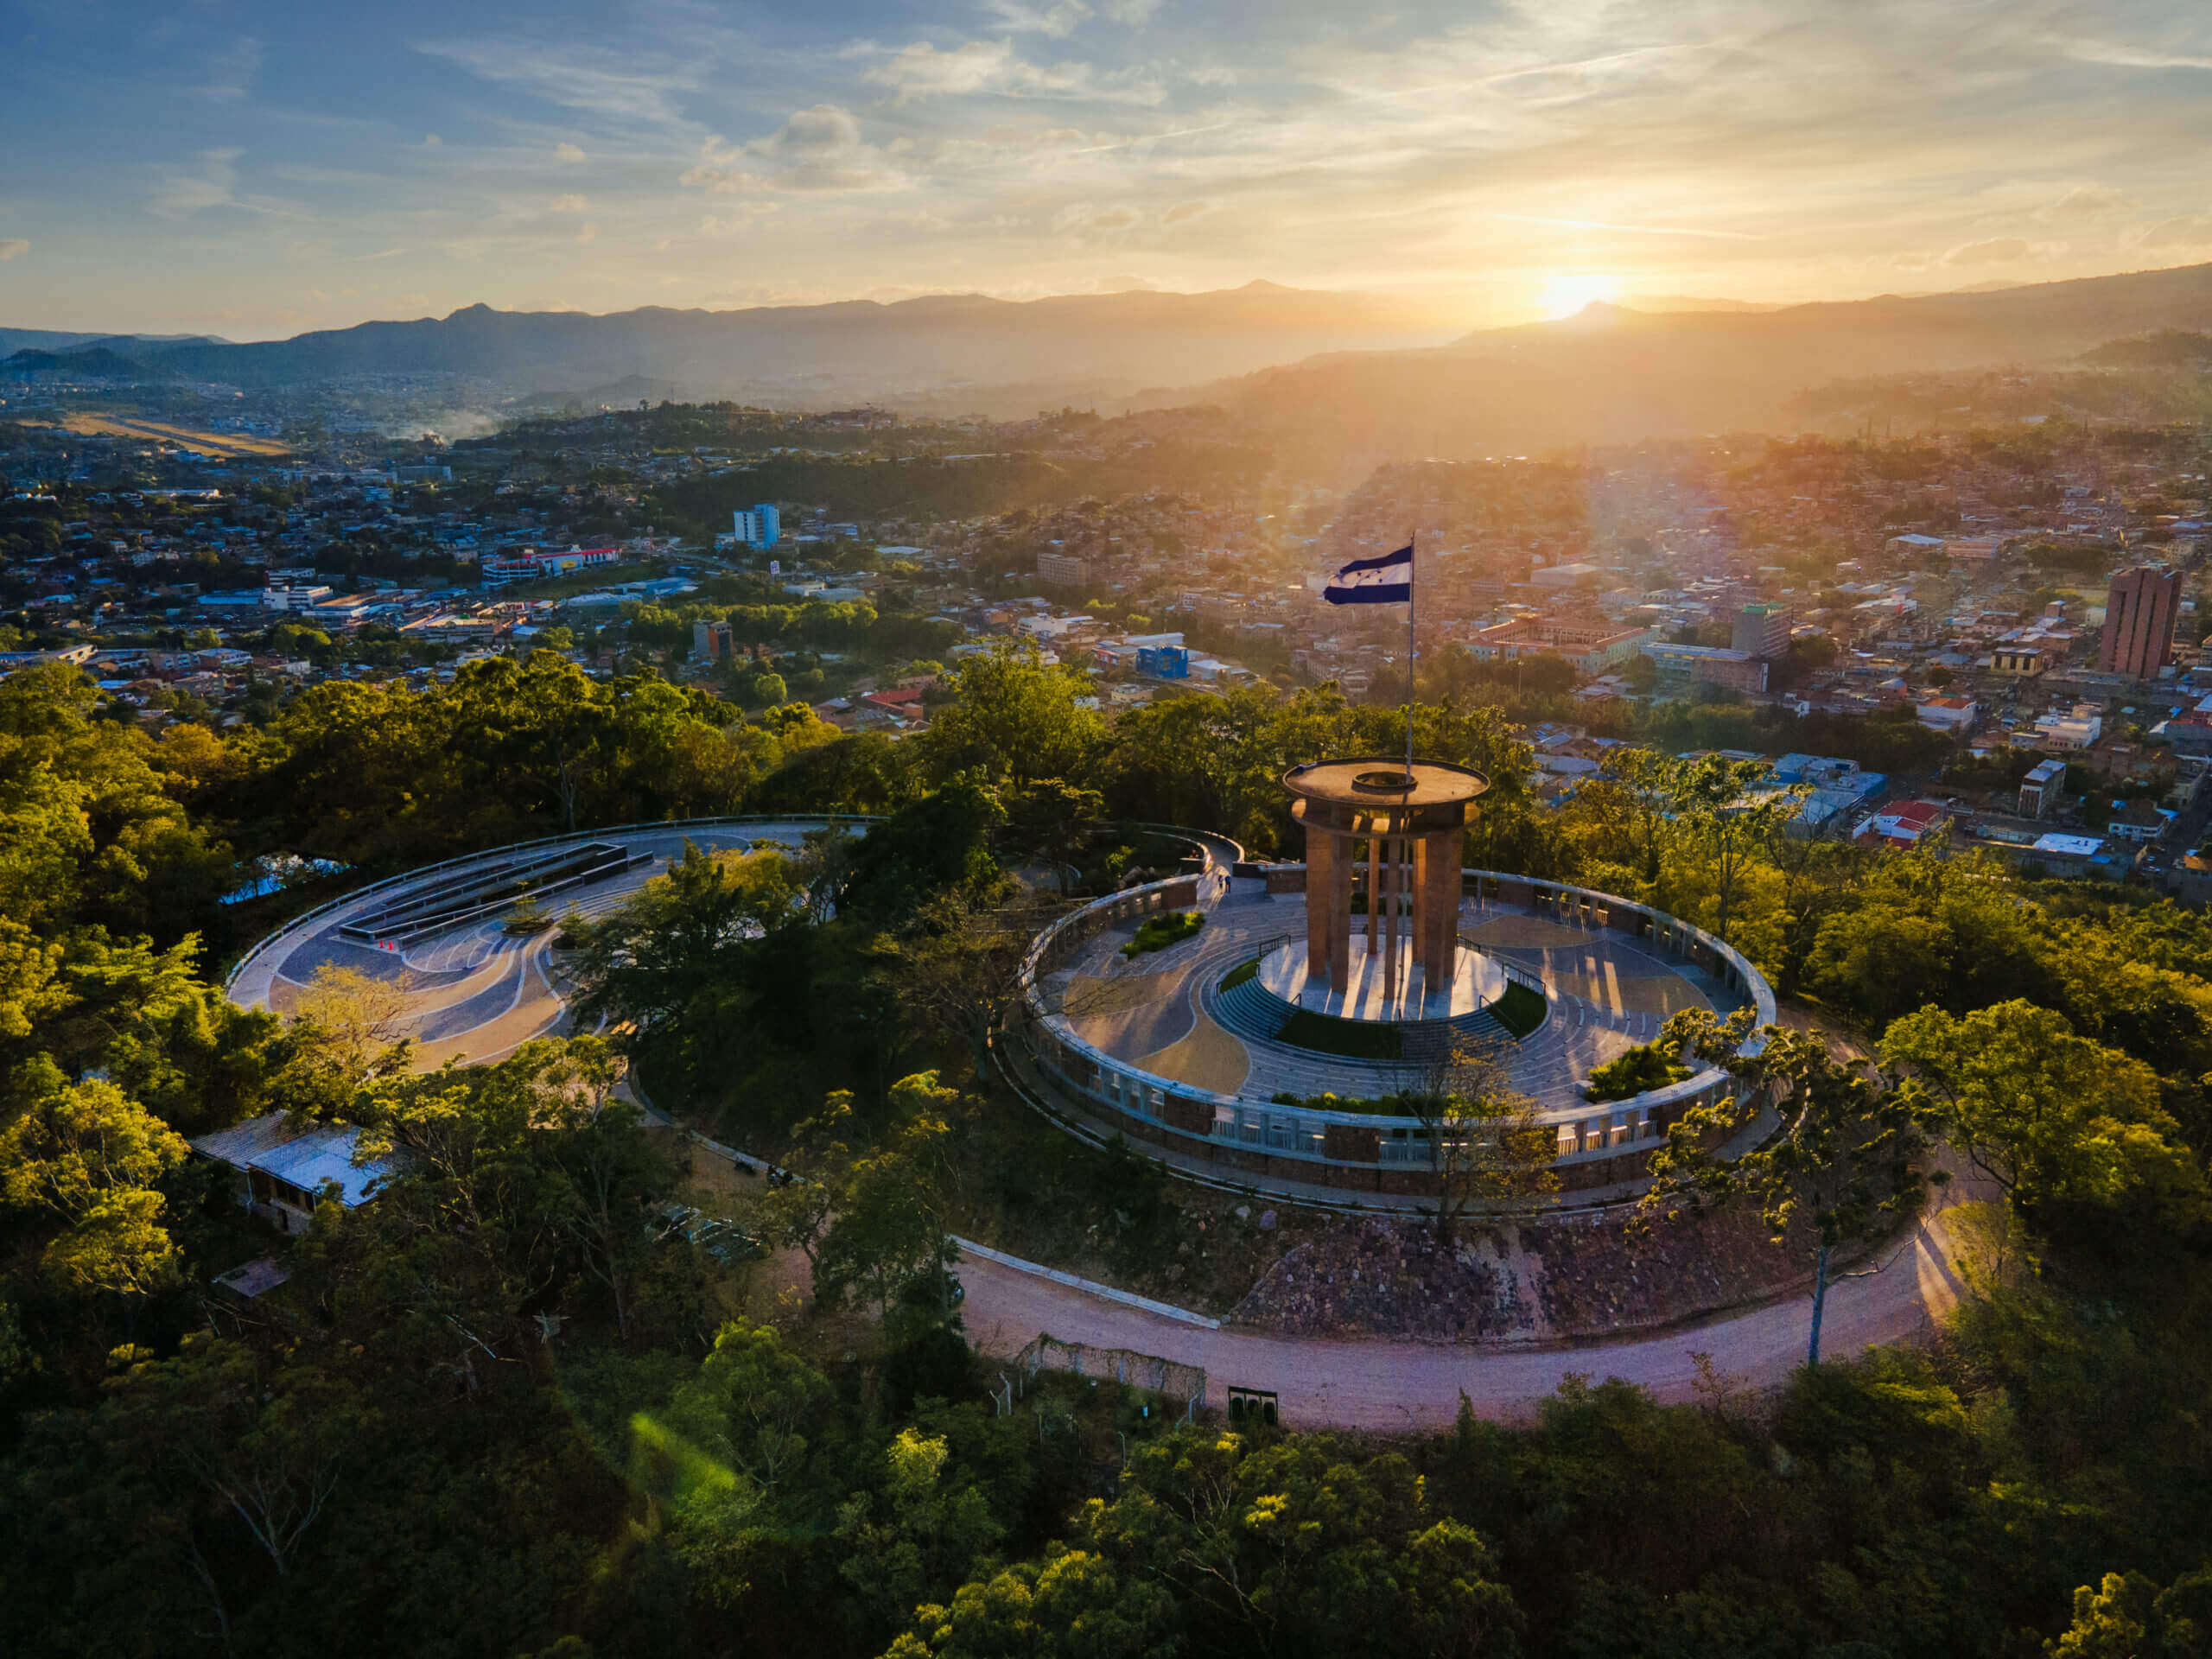 Tegucigalpa, Honduras